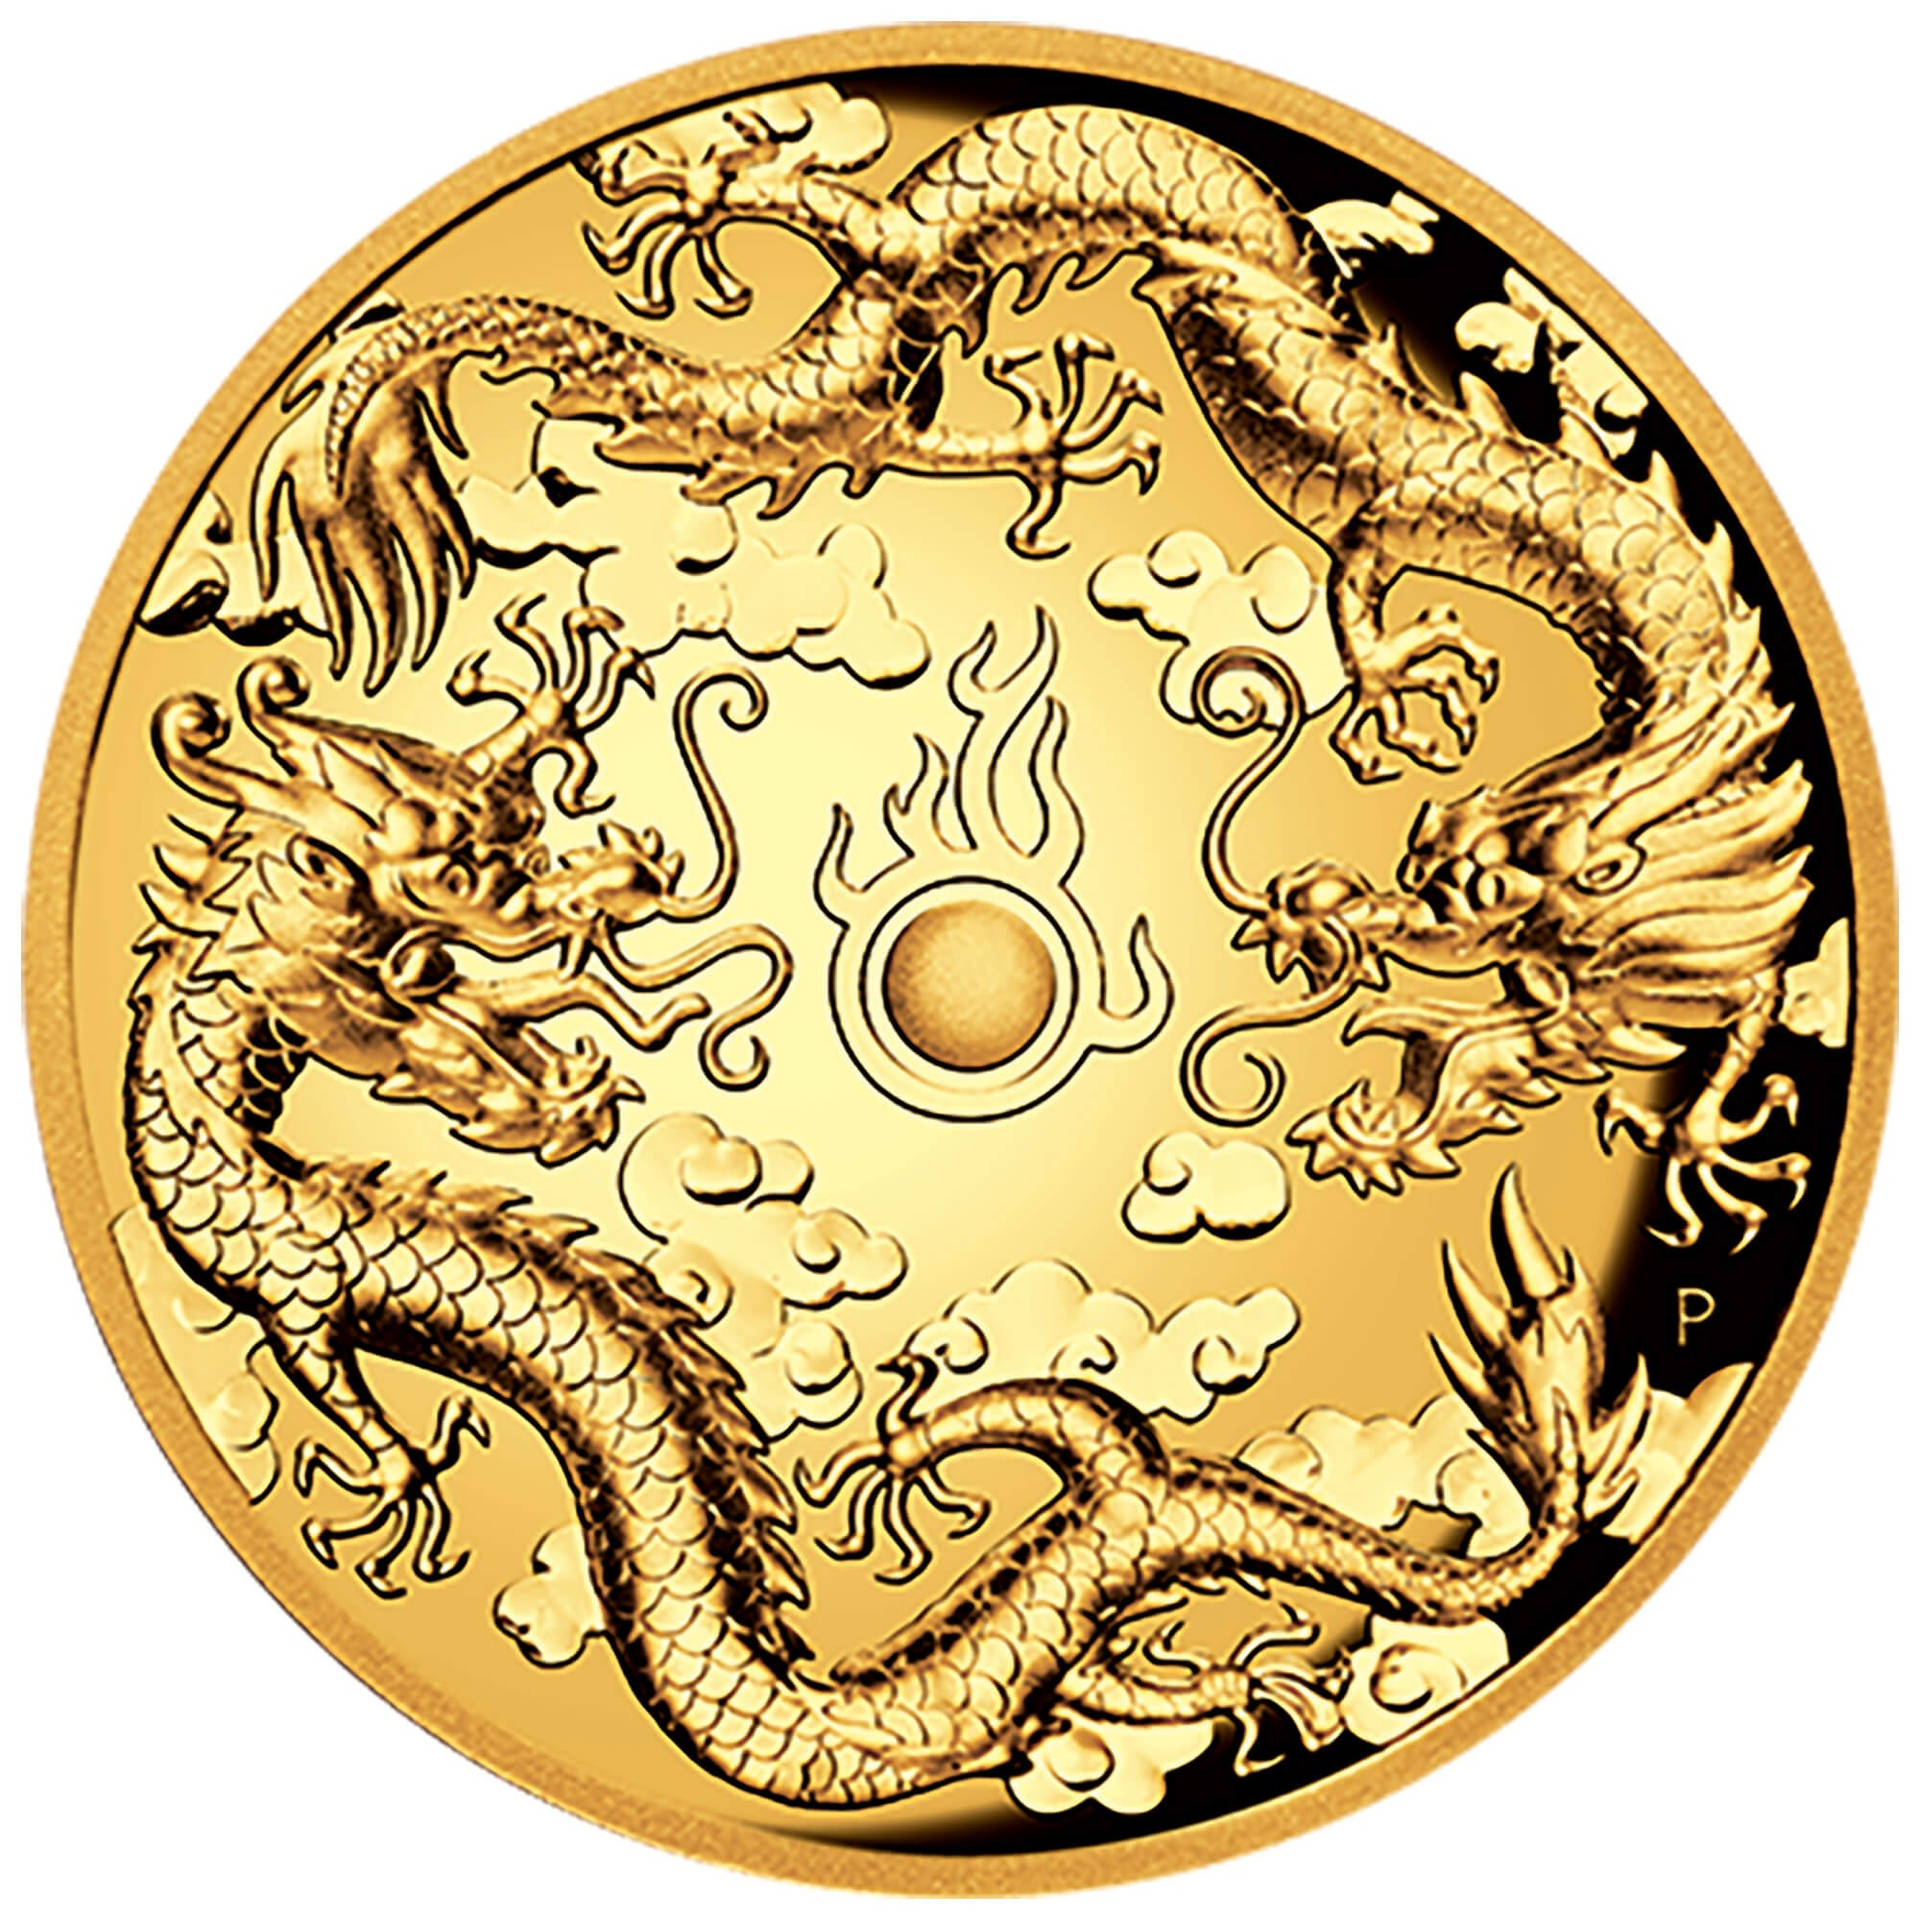 Goldenerdrachen Gong Wallpaper